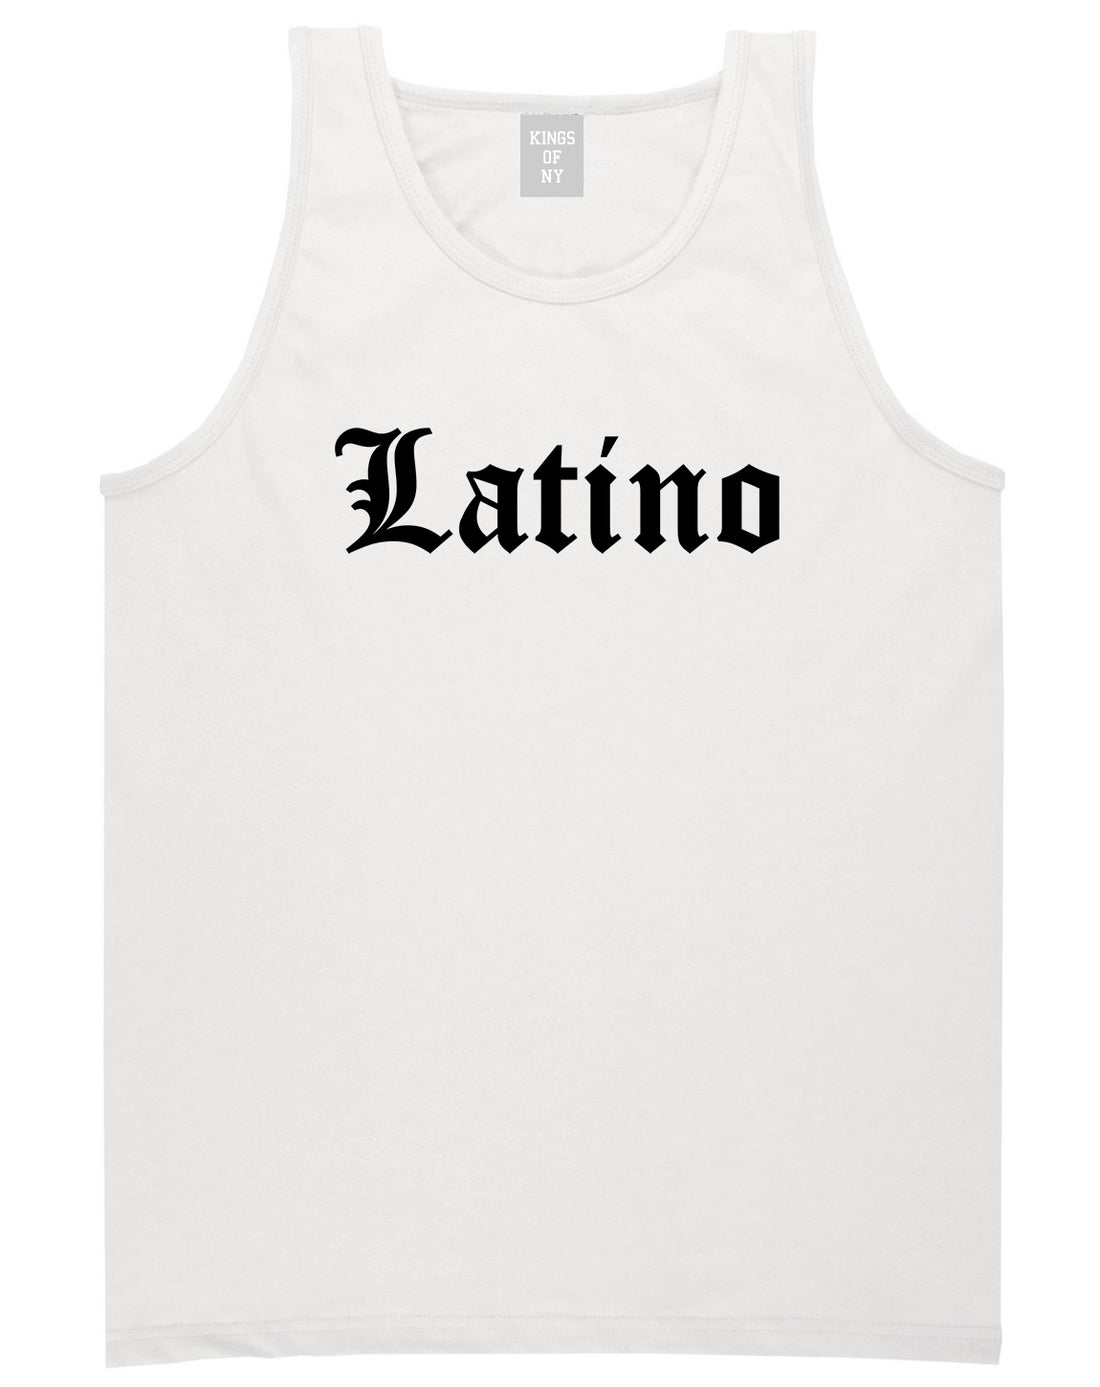 Latino Old English Spanish Mens Tank Top Shirt White by Kings Of NY